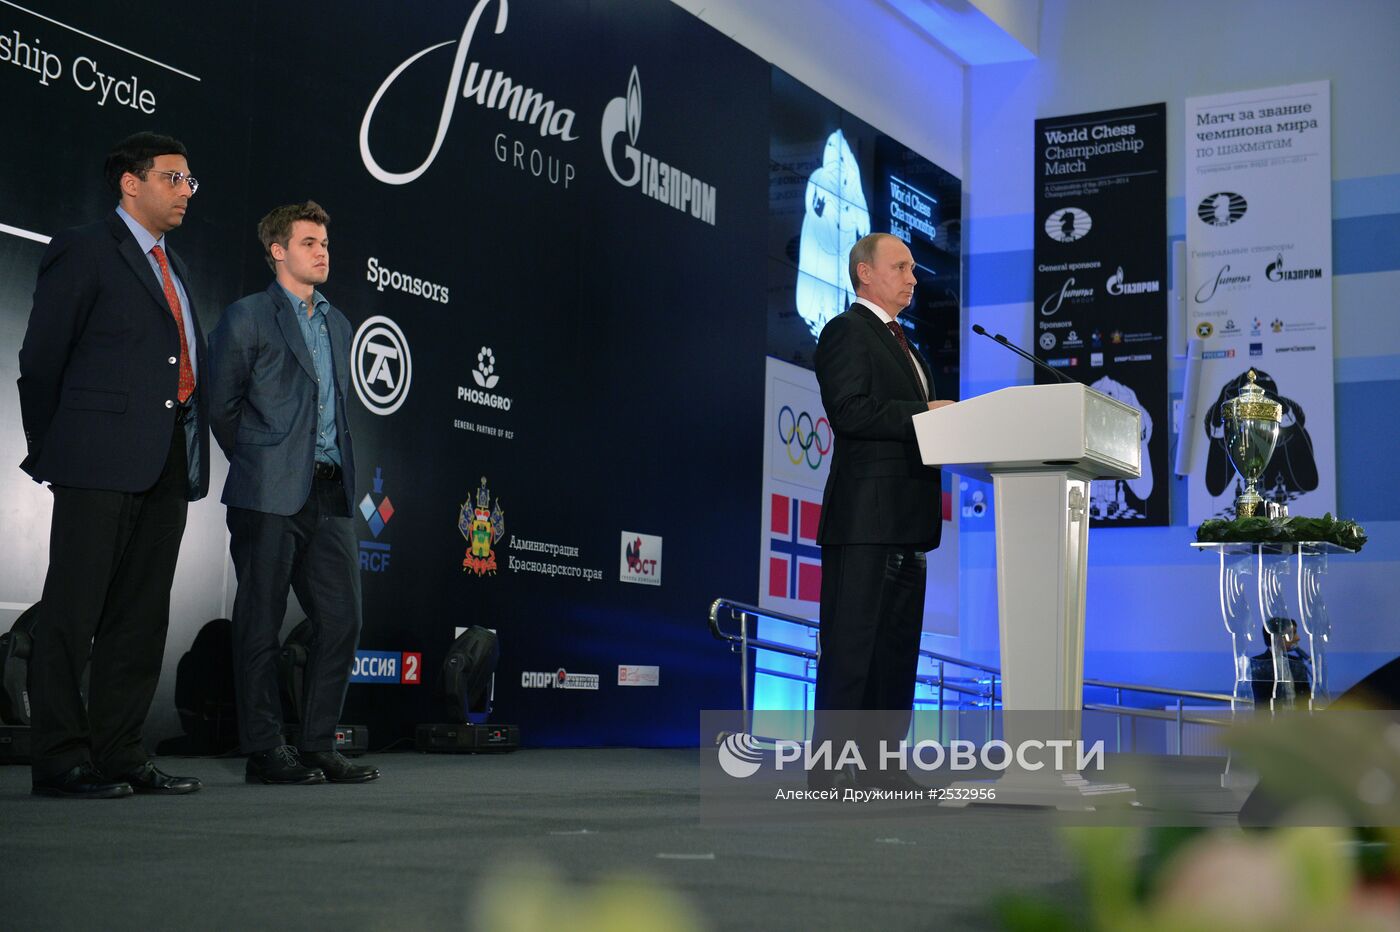 В.Путин принял участие в церемонии награждения чемпиона мира по шахматам